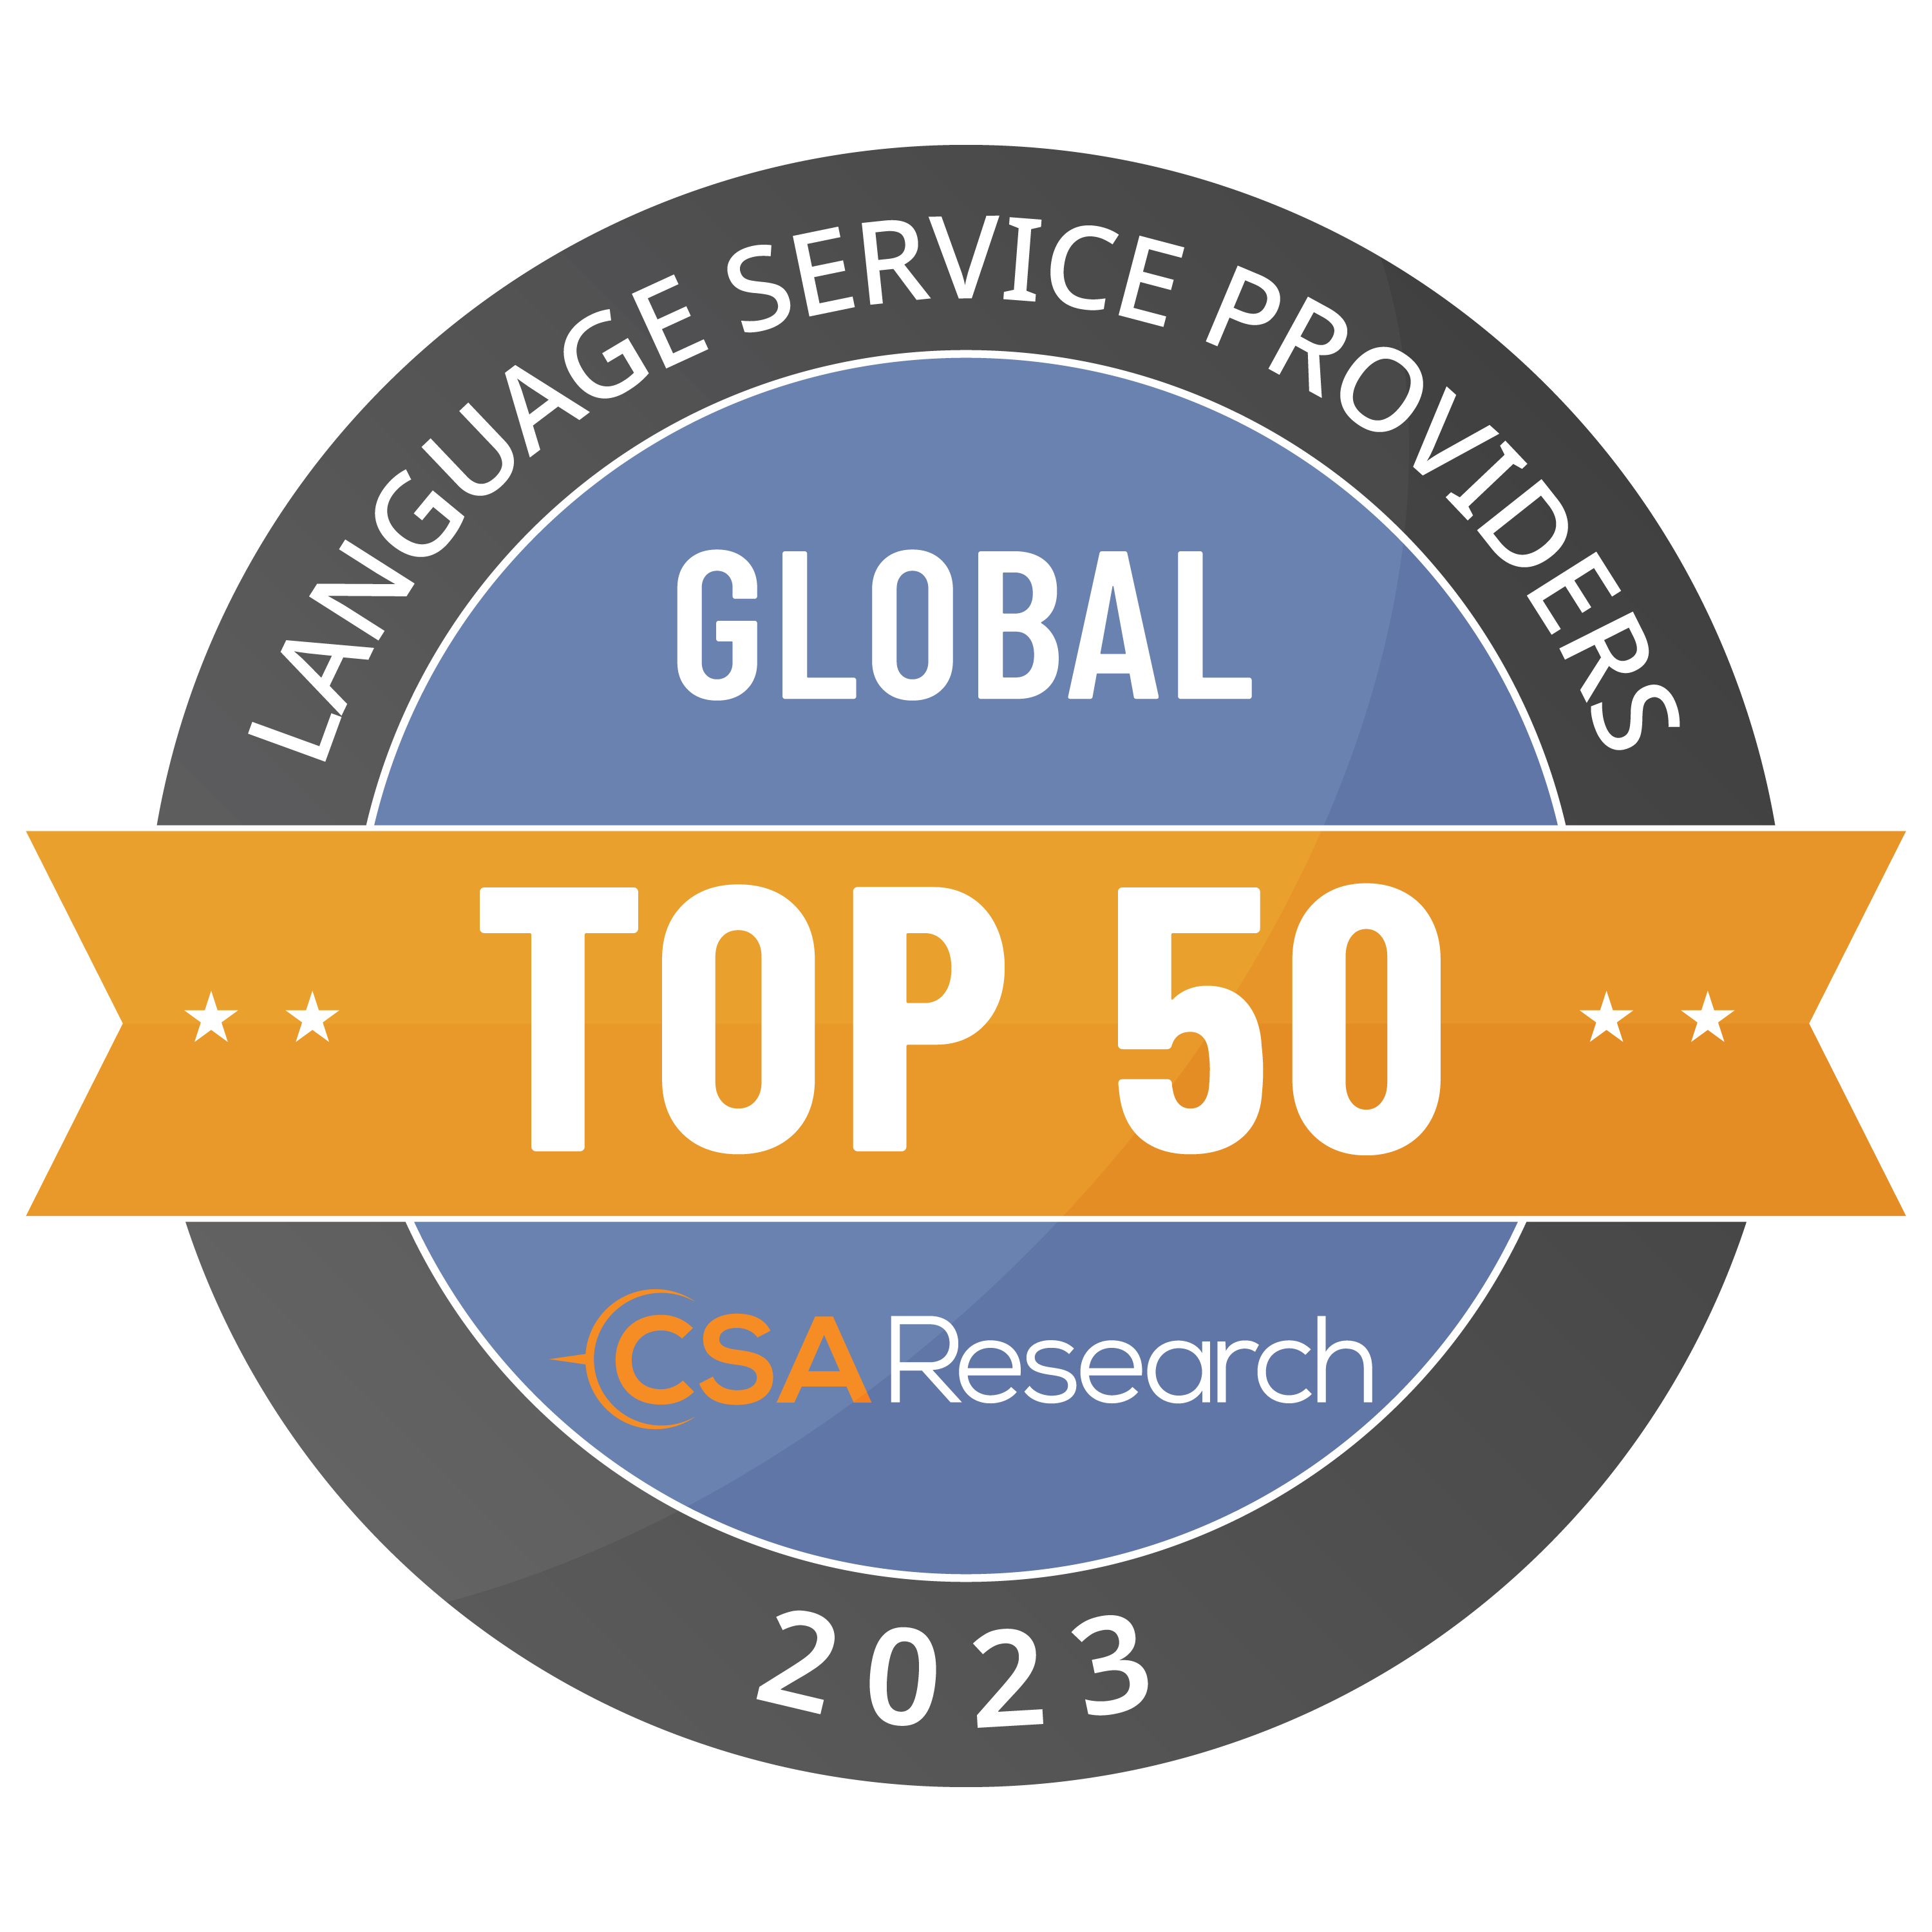 CSA Research Badge Top 50 Global